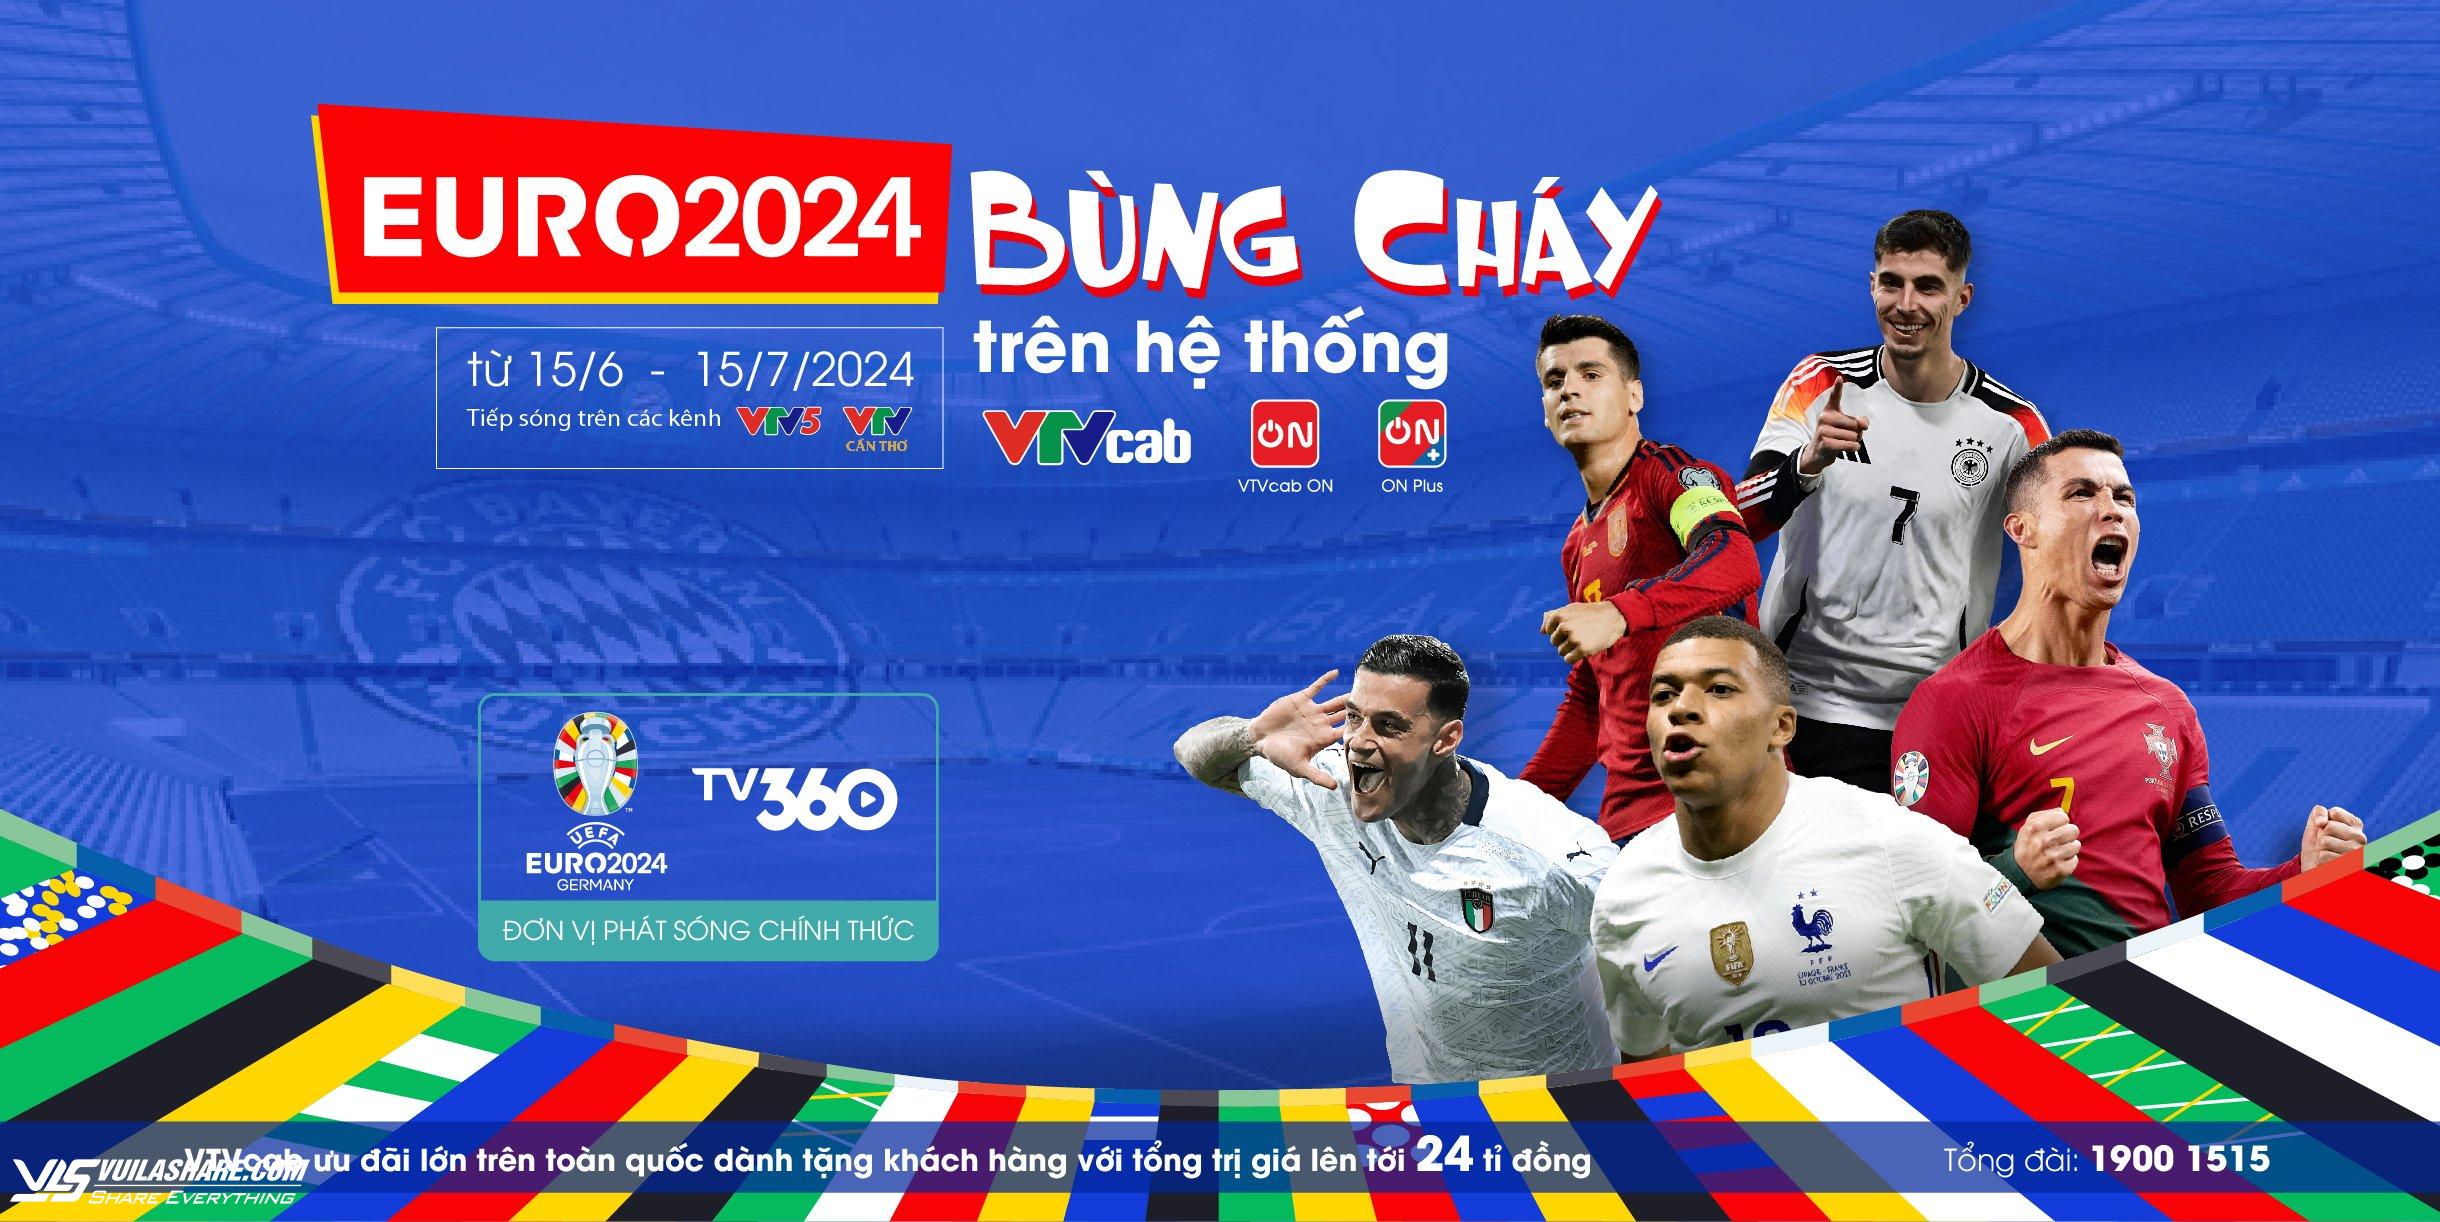 EURO 2024 'bùng cháy' với nhiều đội hùng mạnh, VTVcab đã sẵn sàng!- Ảnh 3.